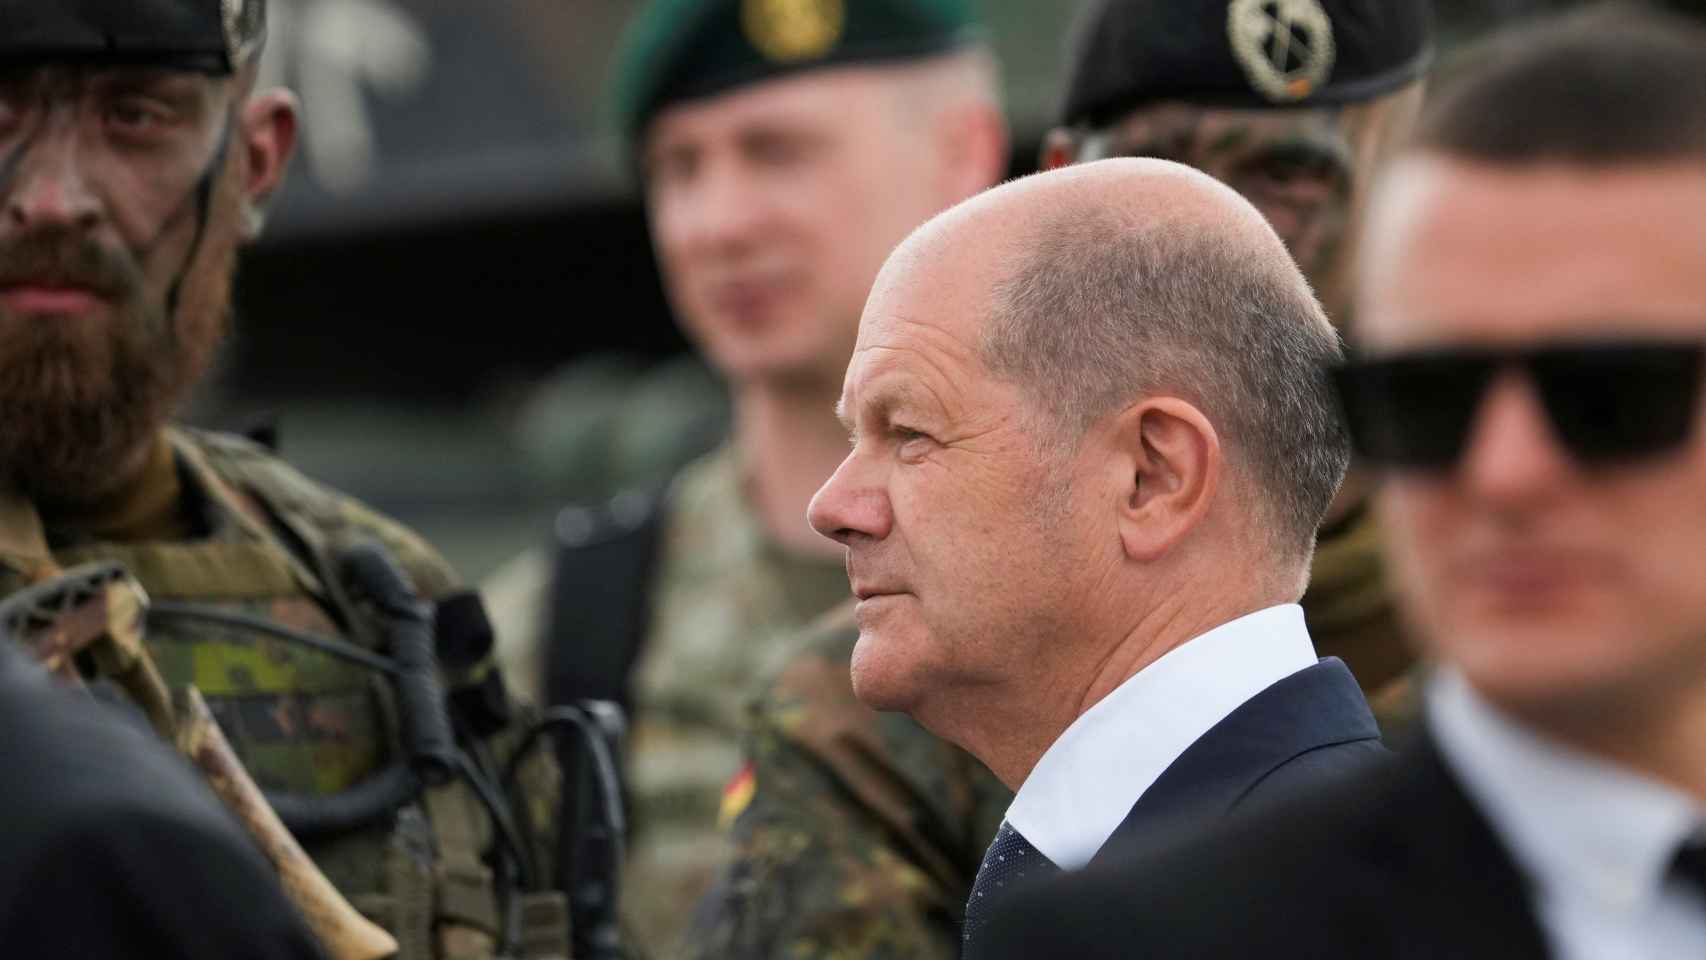 El canciller alemán Olaf Scholz visita a las tropas alemanas desplegadas en el marco de la OTAN en Lituania.